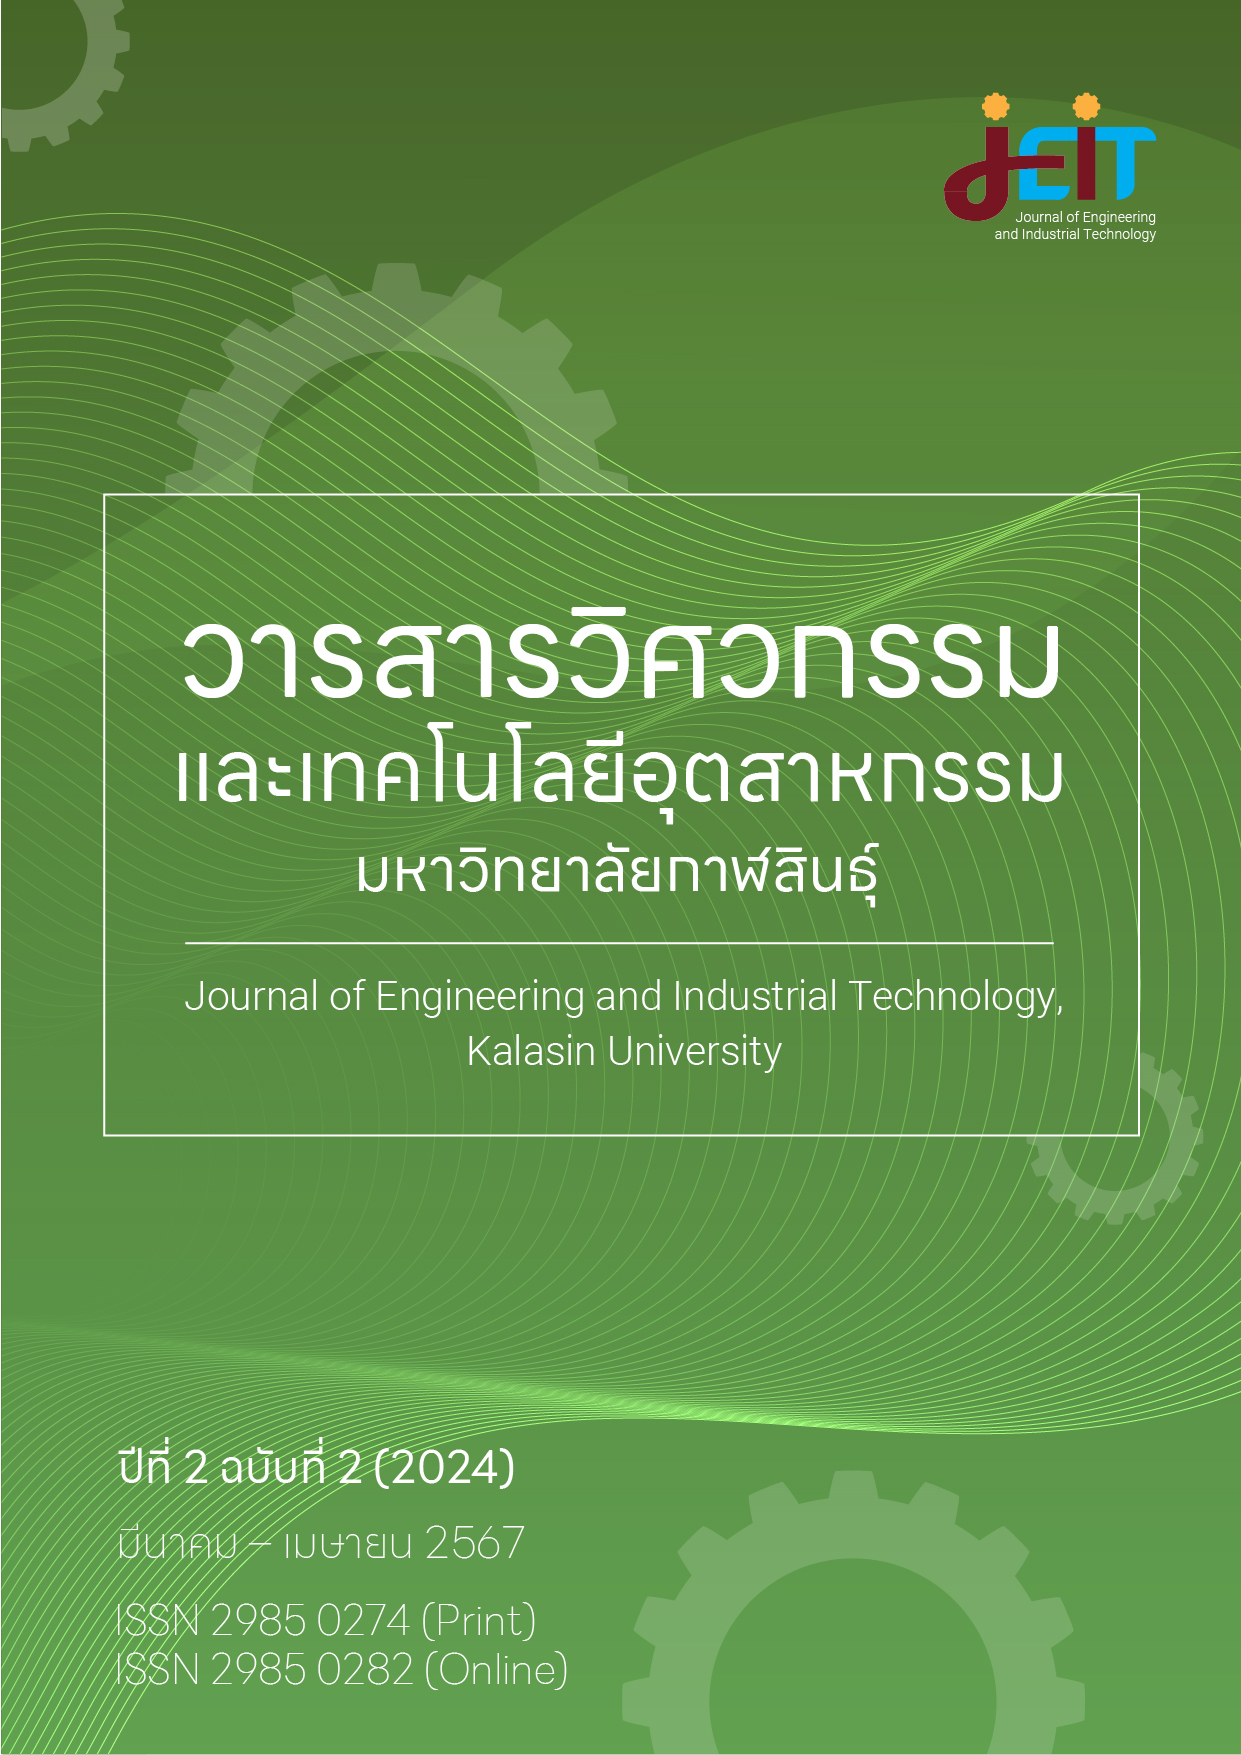 					ดู ปีที่ 2 ฉบับที่ 2 (2024): วารสารวิศวกรรมและเทคโนโลยีอุตสาหกรรม มหาวิทยาลัยกาฬสินธุ์ ปีที่ 2 ฉบับที่ 2 (มีนาคม - เมษายน 2567)
				